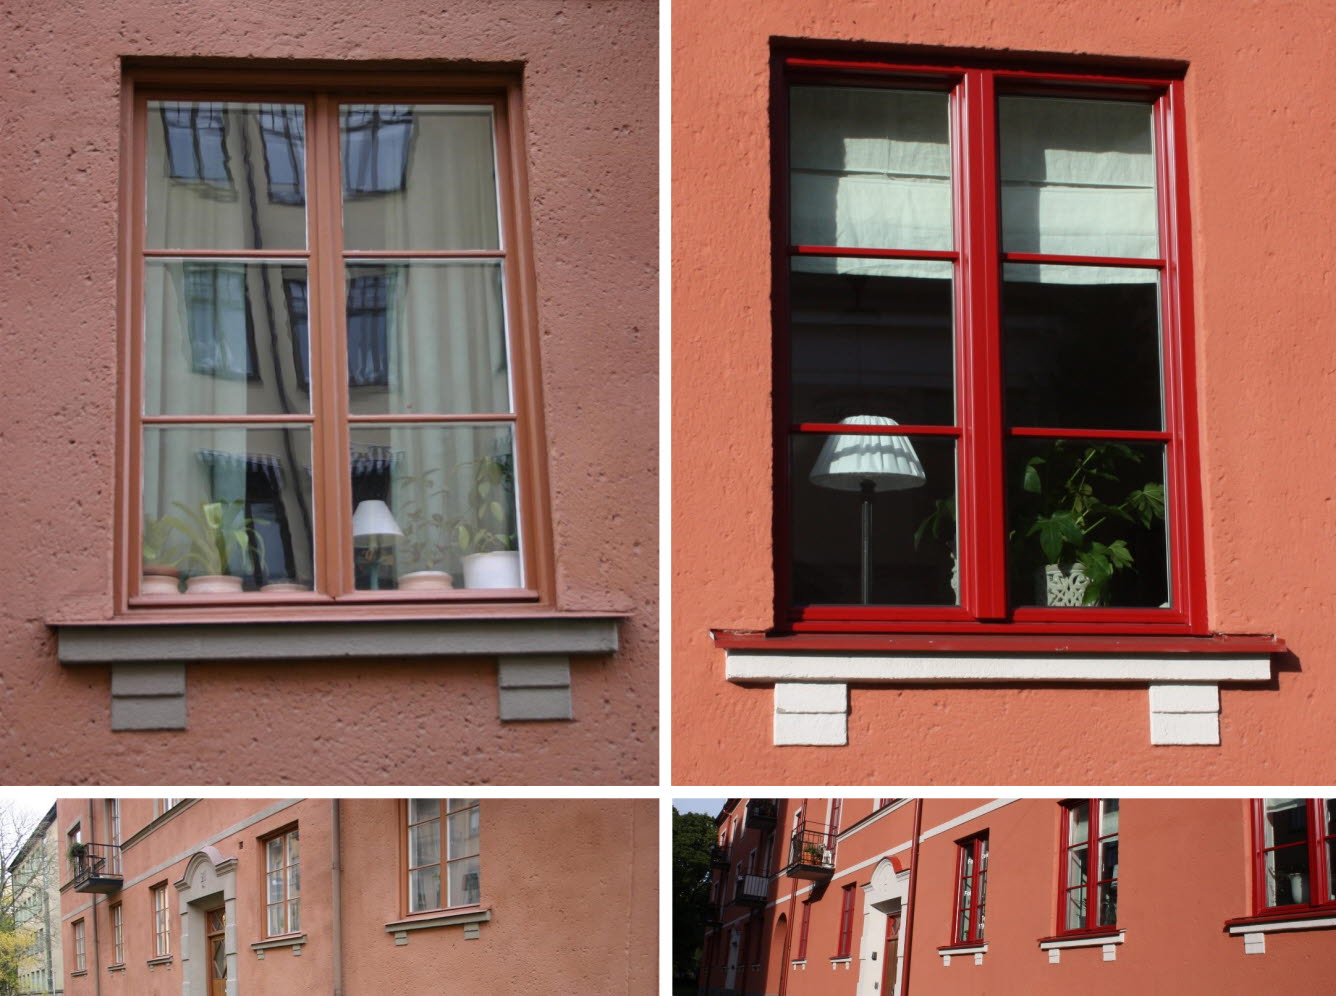 Fyra foton som visar hur fönster och fasad såg ut före och efter förändringen. Mer information i brödtexten.